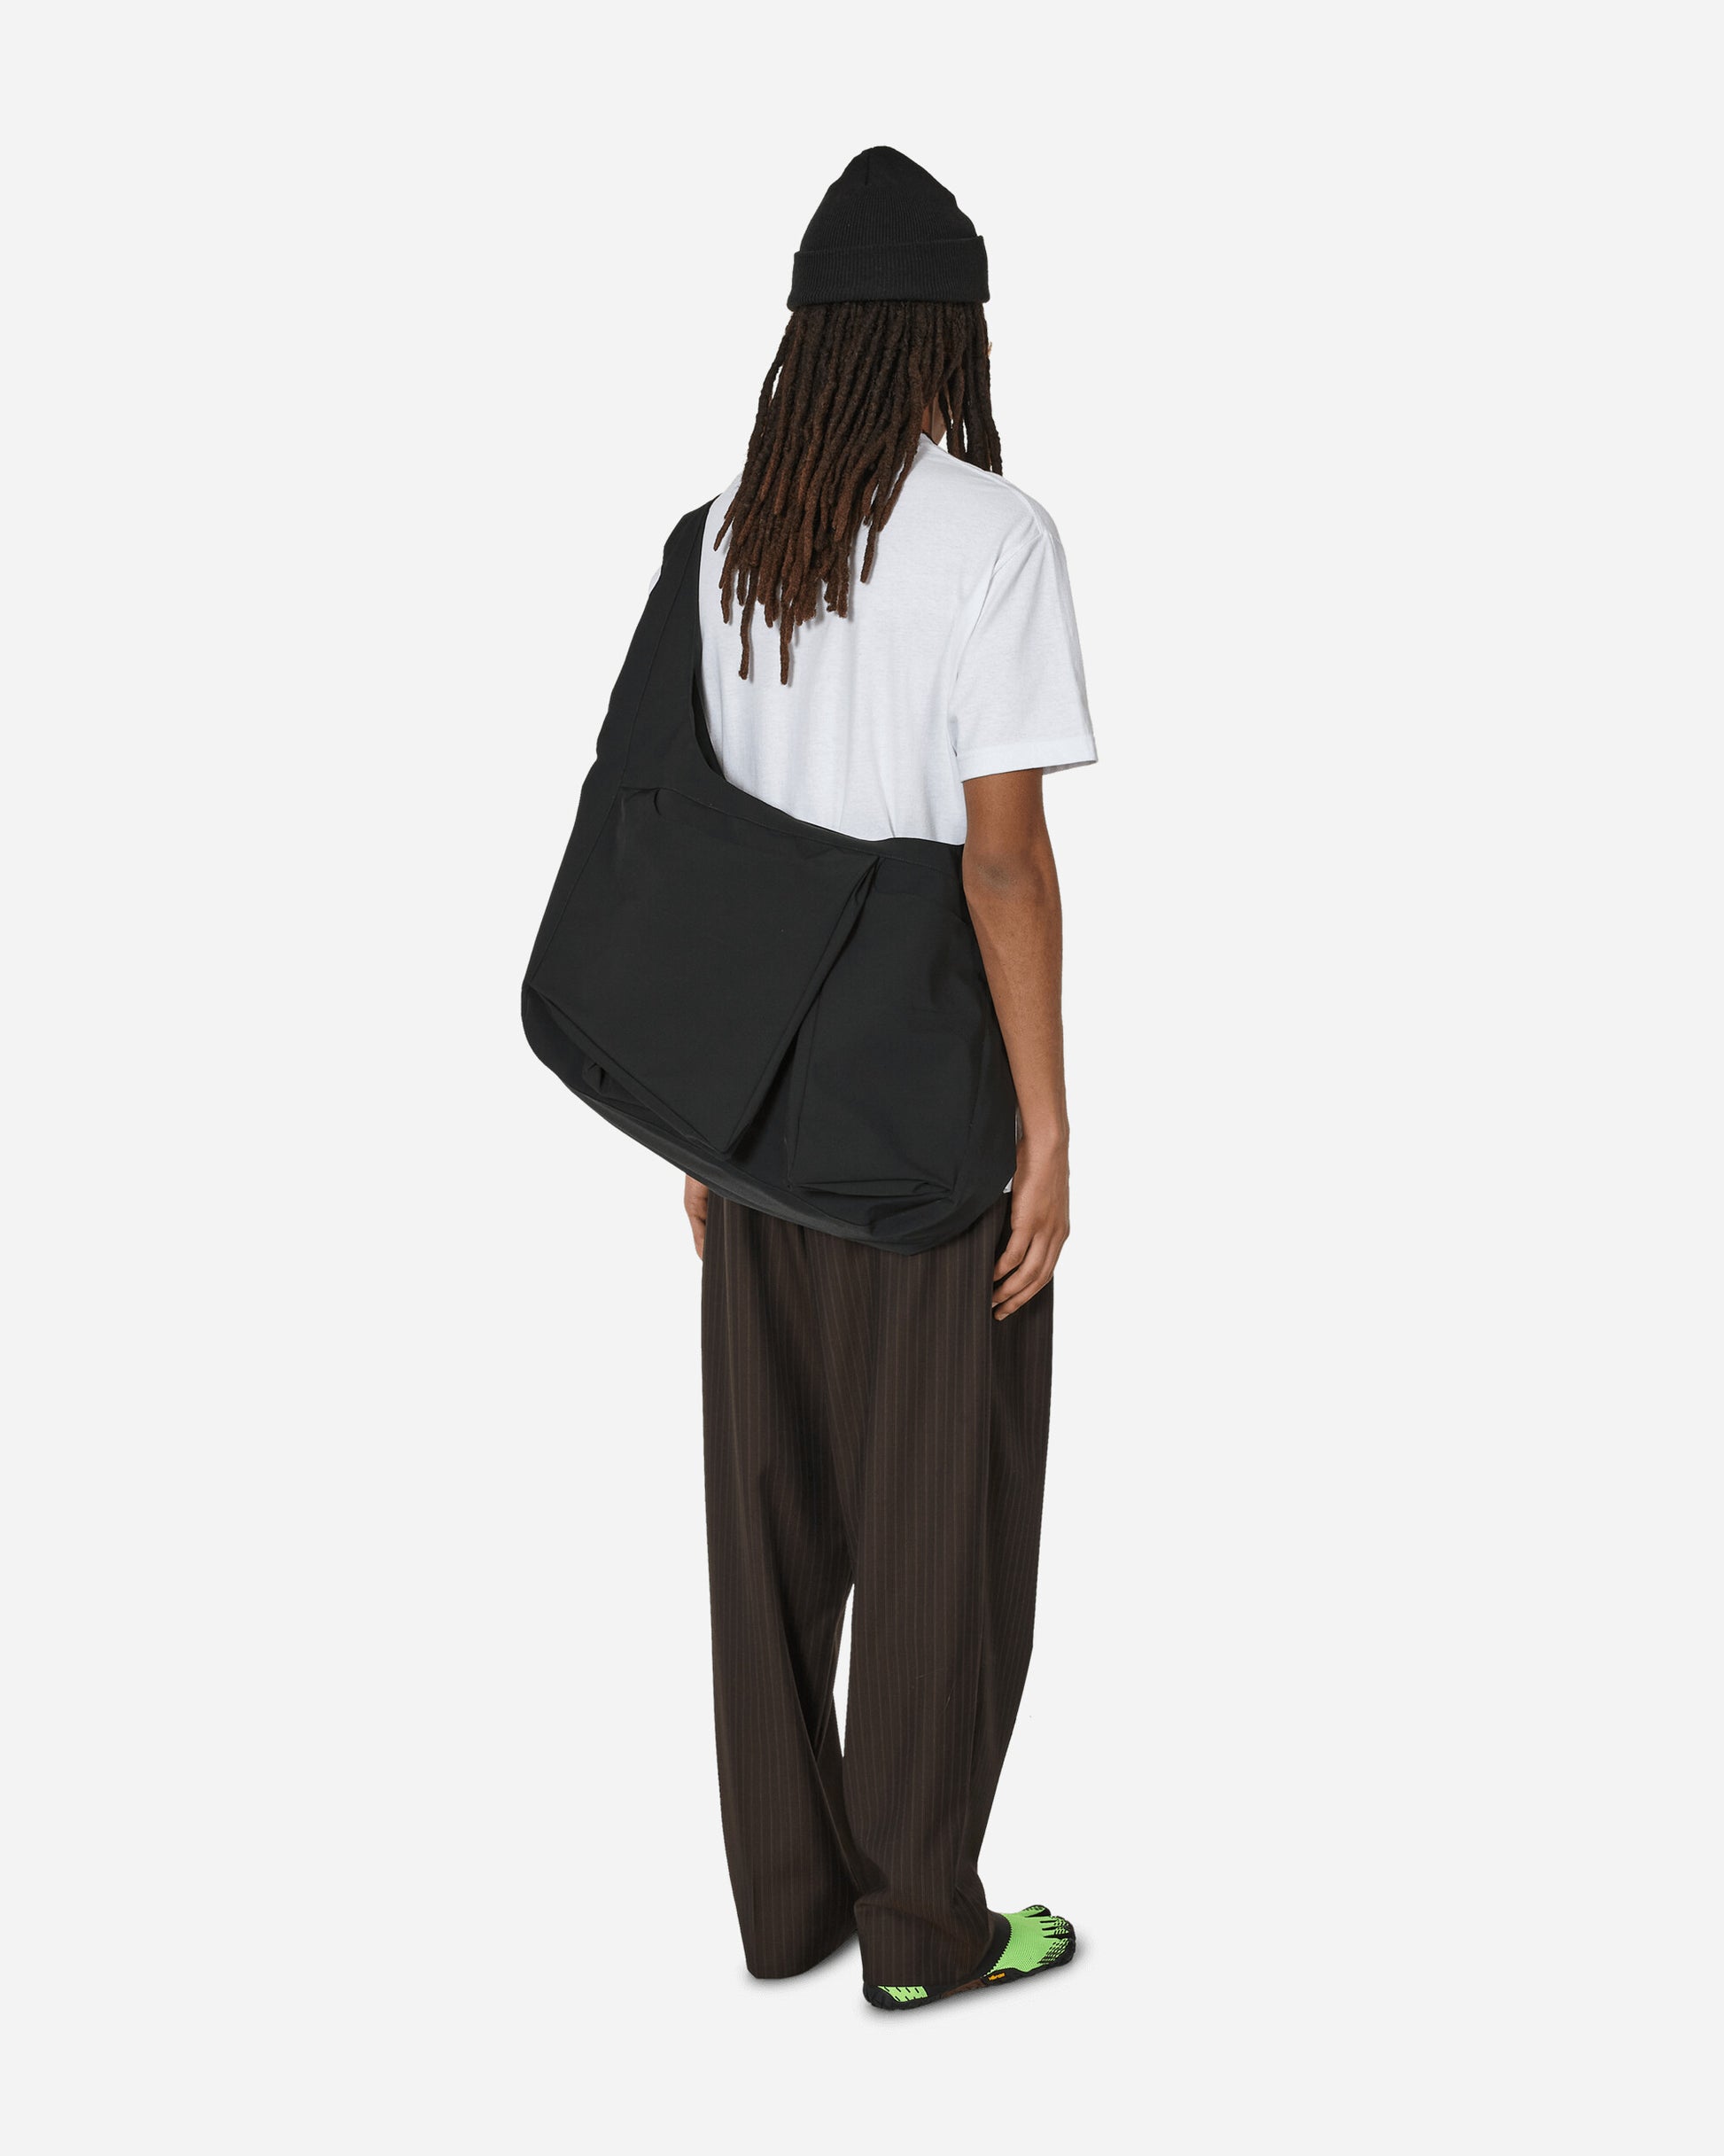 _J.L-A.L_ Dyad Bag Black Bags and Backpacks Shoulder Bags JBUW203FA03 BLK0001